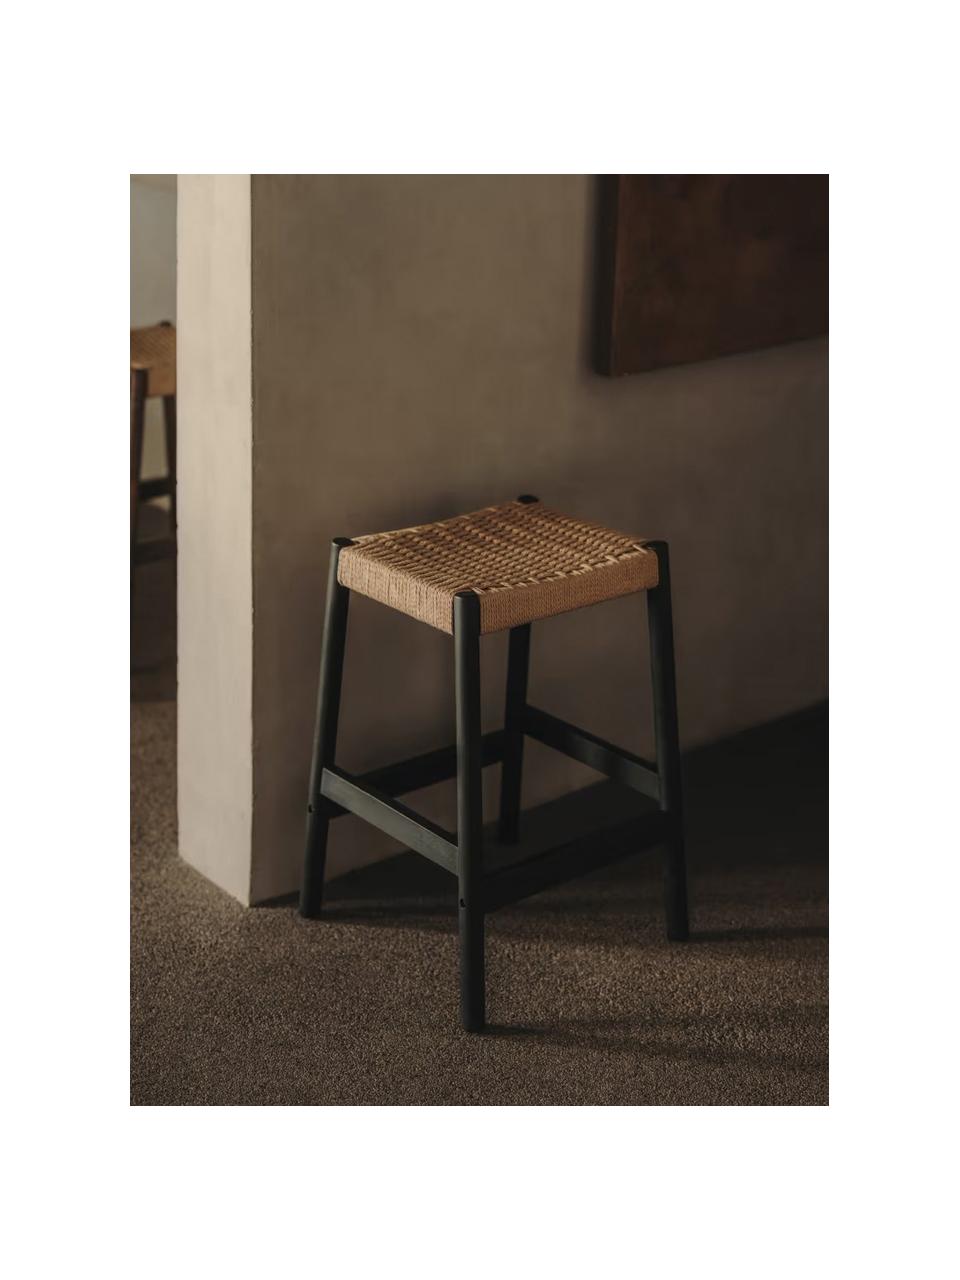 Eichenholz-Hocker Yalia mit geflochtener Sitzfläche, Sitzfläche: Papierseil, Gestell: Eichenholz, lackiert Dies, Beige, Schwarz, B 45 x H 66 cm